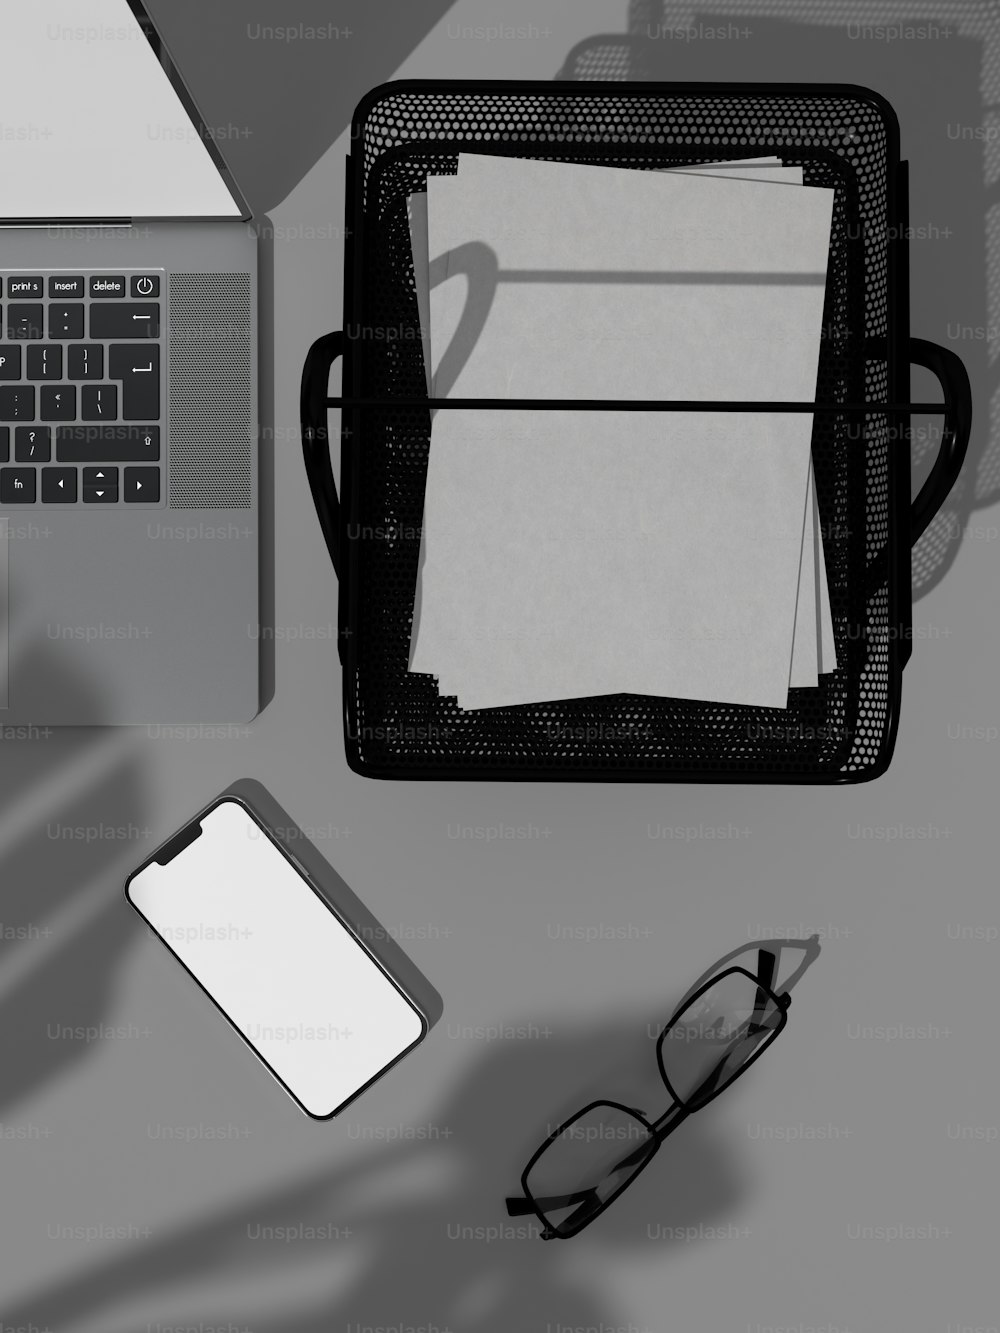 Una computadora portátil sentada encima de un escritorio junto a un par de gafas